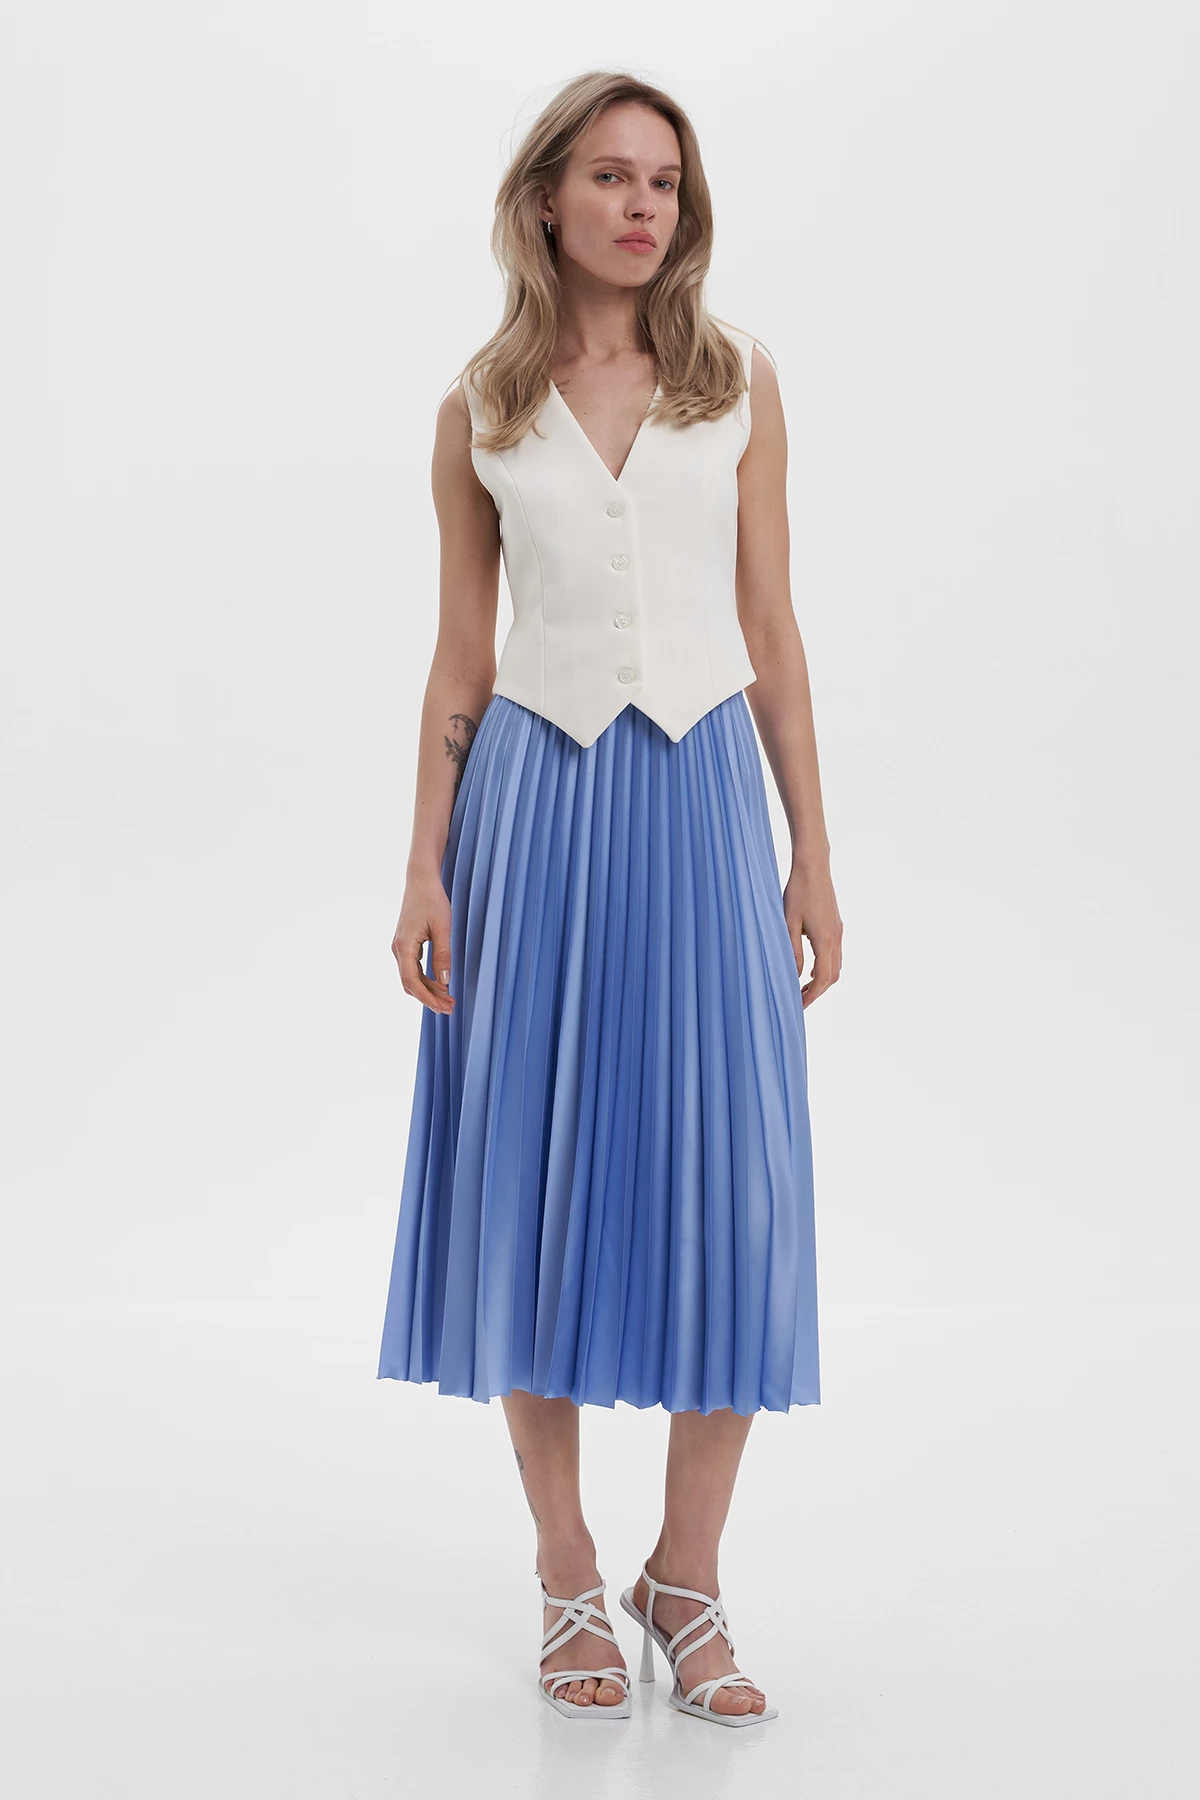 Blue satin midi-length pleated skirt, photo 1